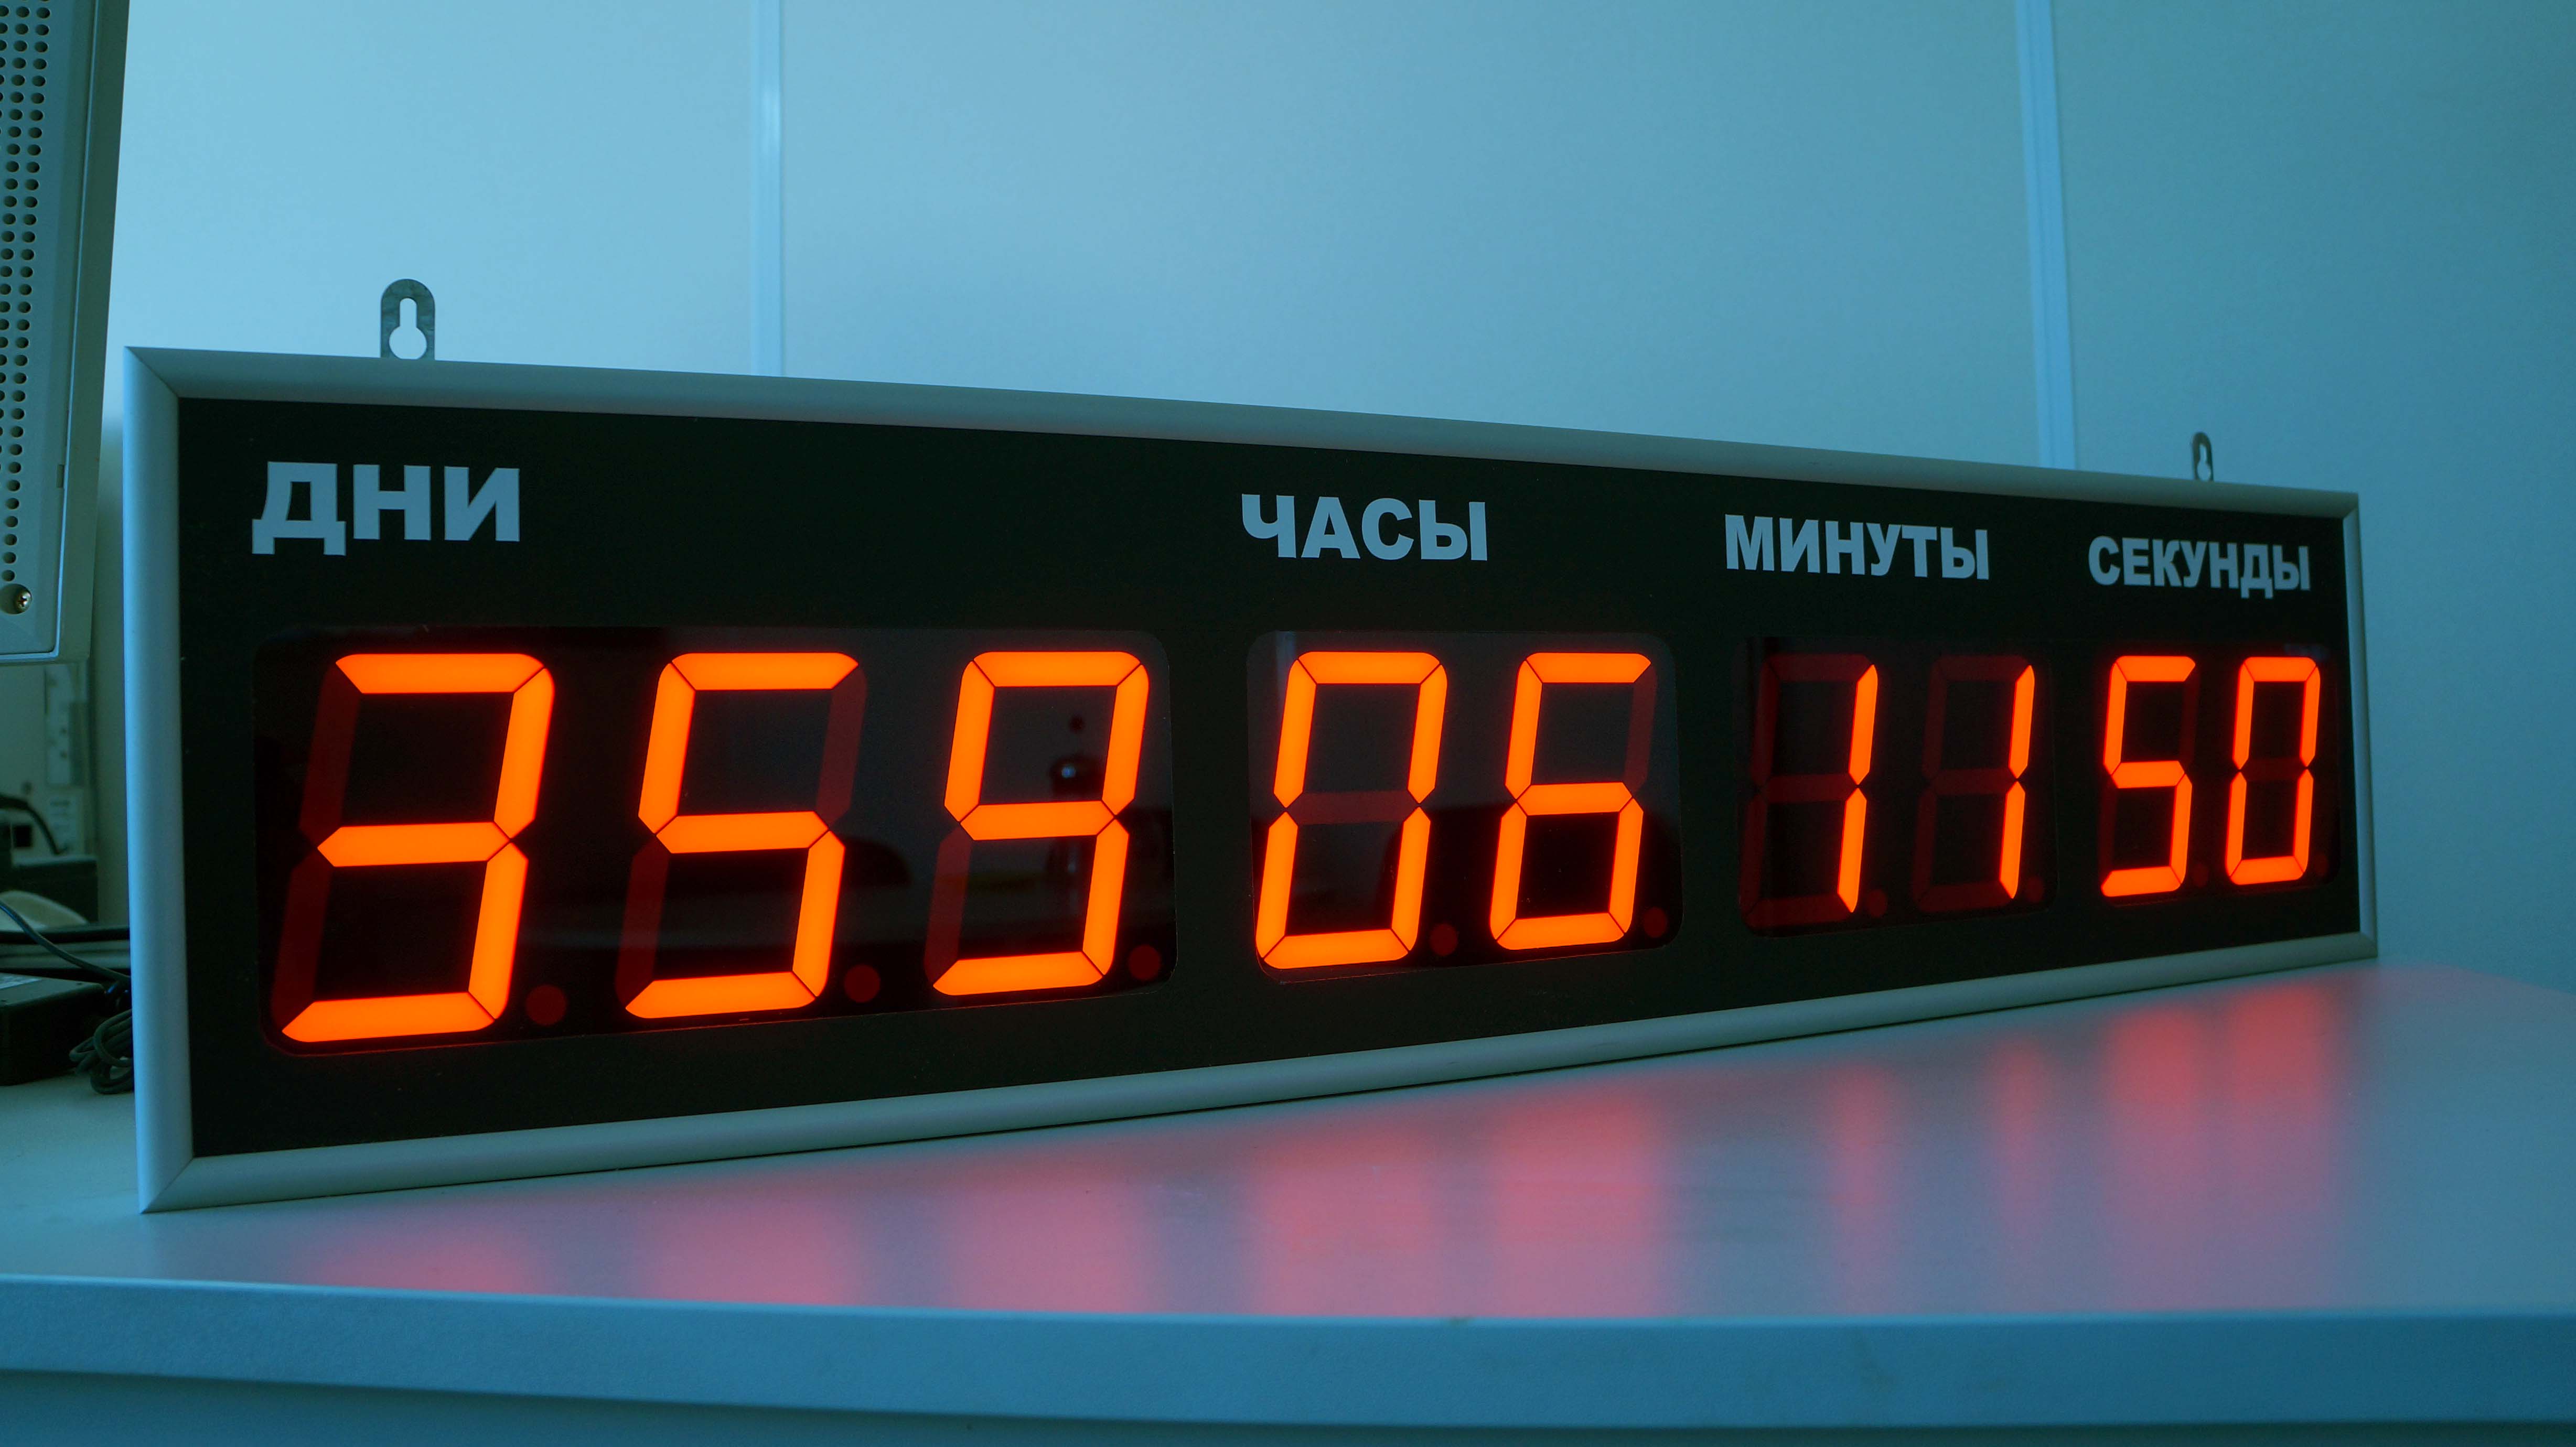 Часы обратно в магазин. 70-0530 Rexant цифровые часы с таймером обратного отсчета RX-100а. Электронные часы интеграл Чэ-01 с ЖК дисплеем. Табло с таймером обратного отсчета. Часы настенные электронные.